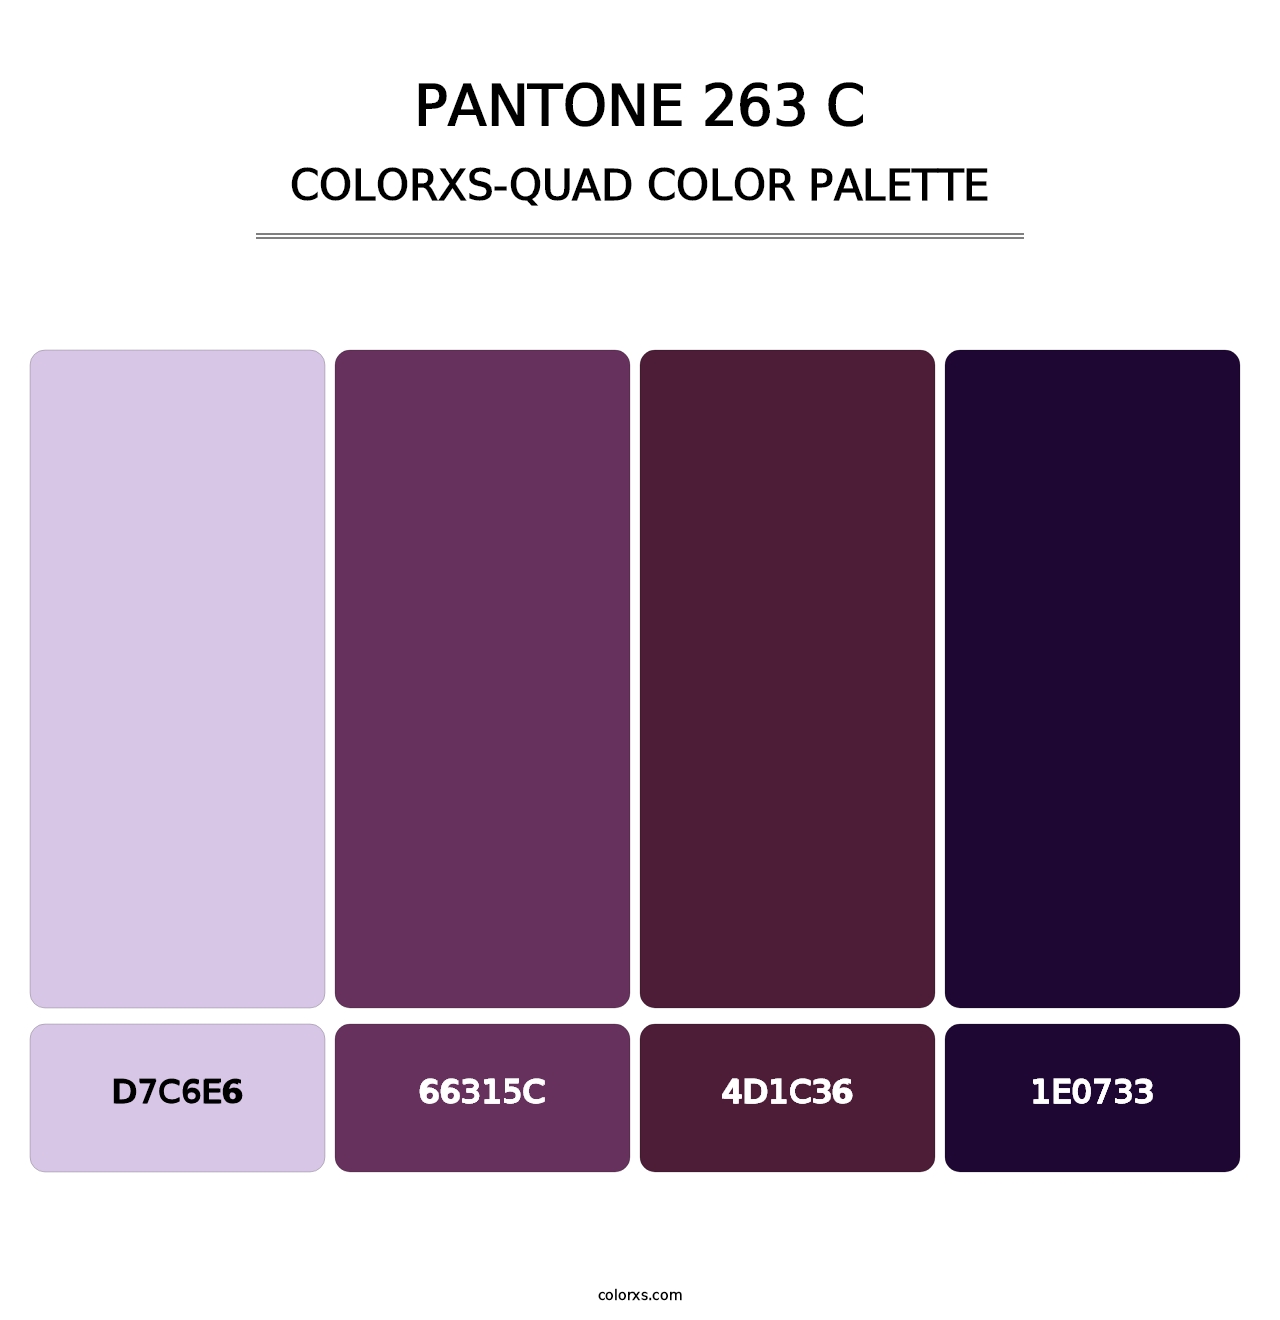 PANTONE 263 C - Colorxs Quad Palette